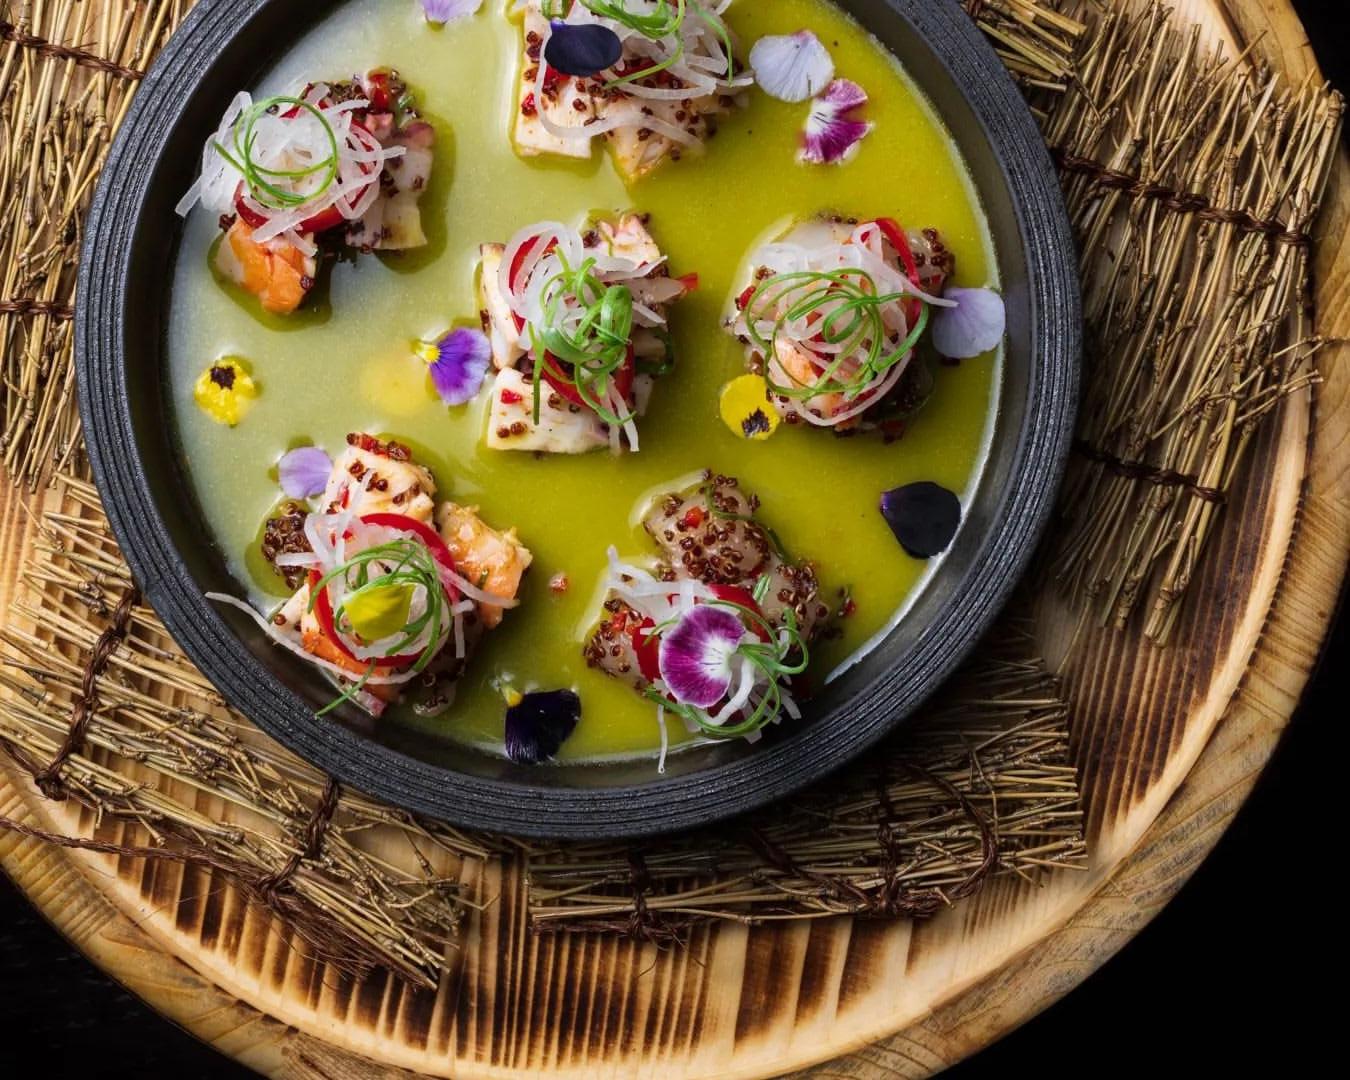 Kuuru Review: Homegrown favourite brings Nikkei cuisine to the Saudi table